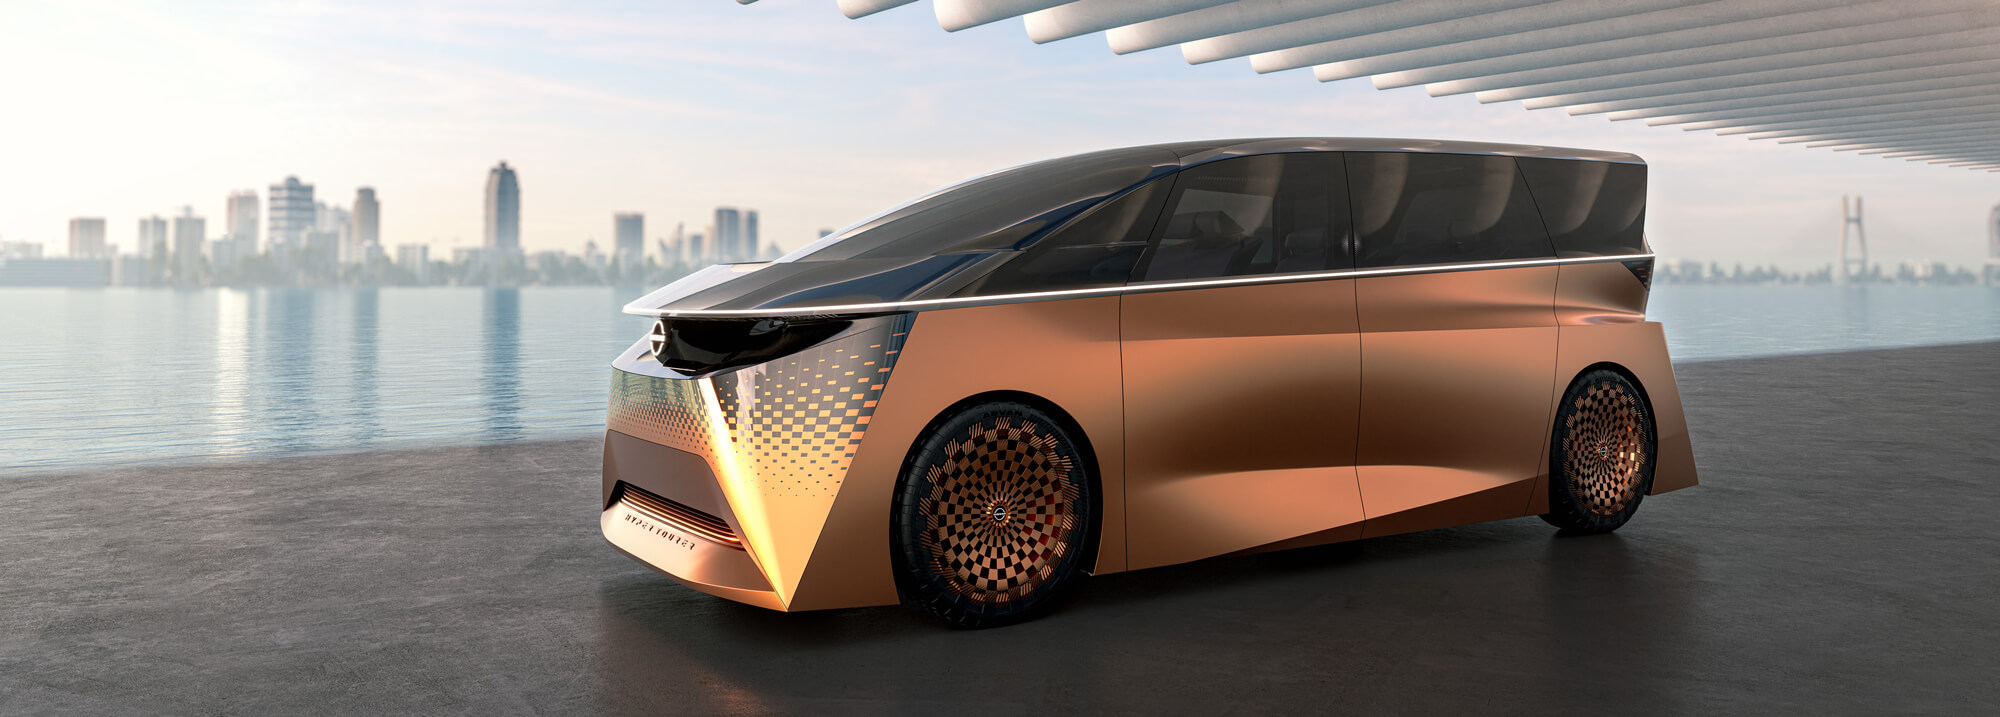 Nissan unveils futuristic Hyper Tourer Concept video-banner